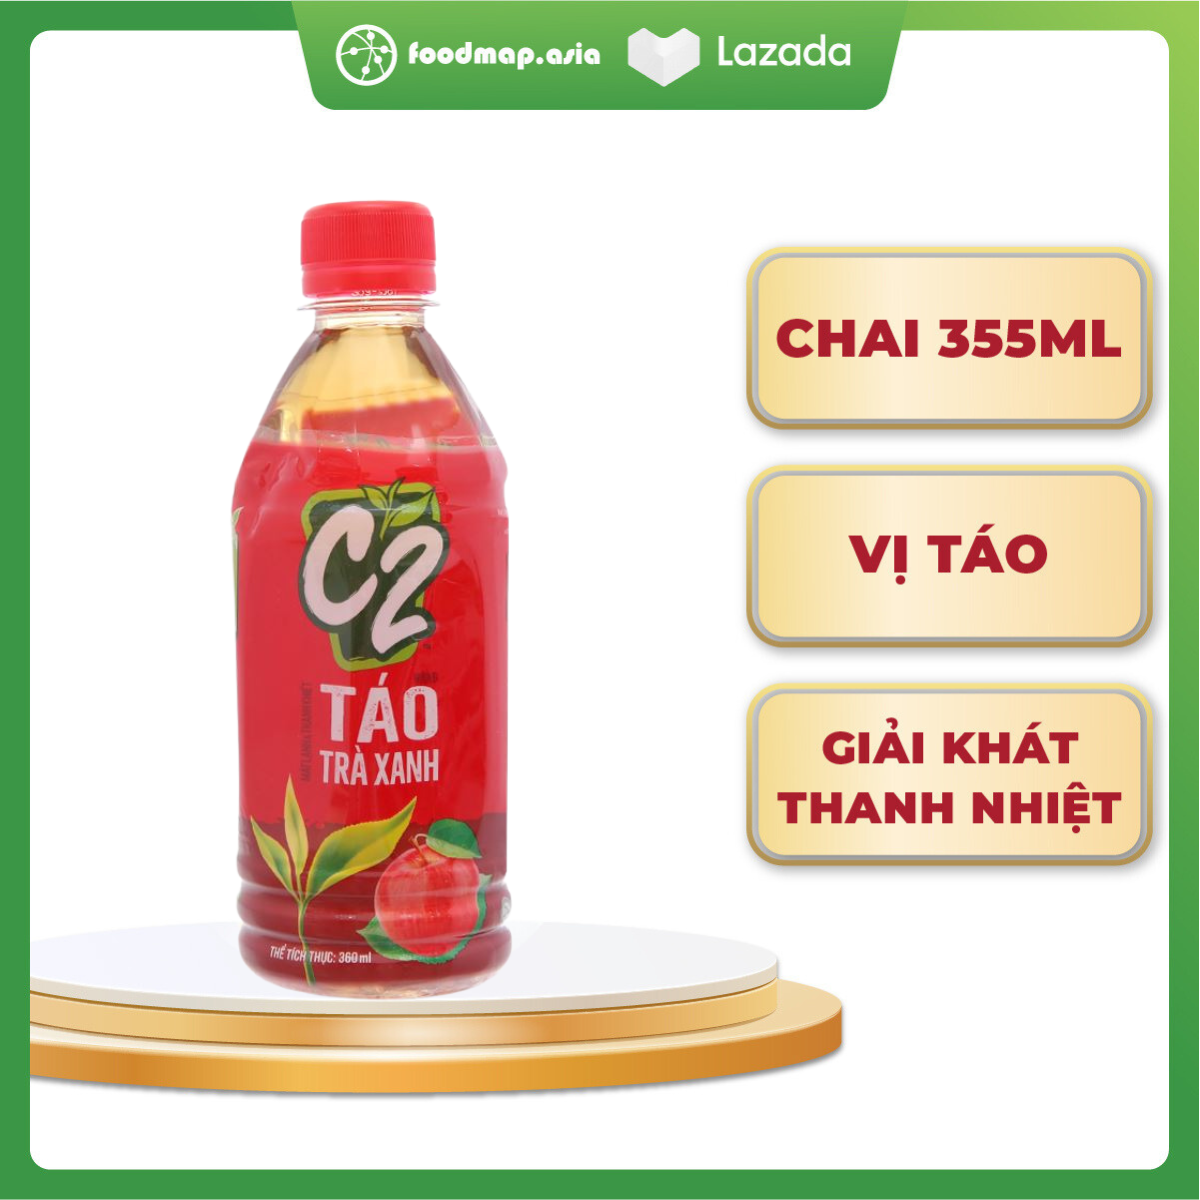 Trà Xanh C2 Hương Táo - Chai 355ml - Giải nhiệt thanh mát - Foodmap